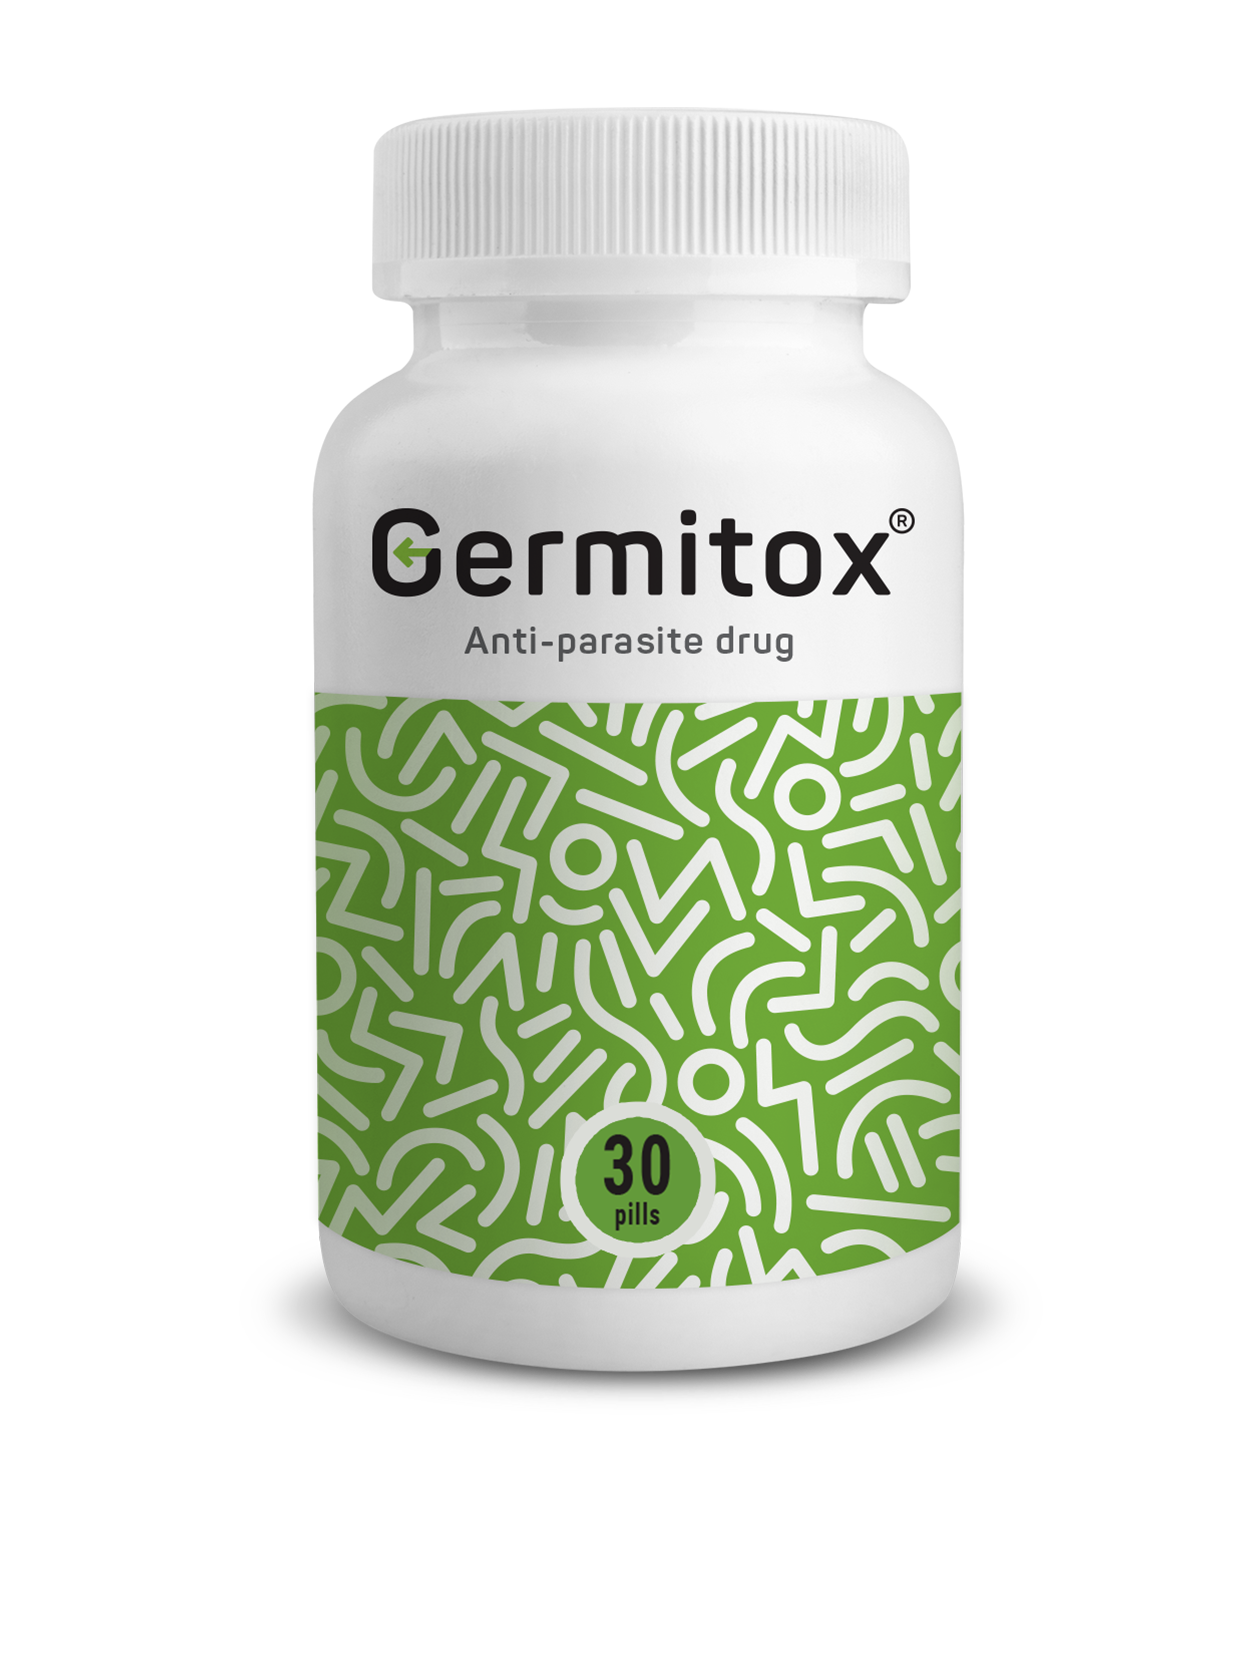 Germitox – Rywalizuj efektywnie z pasożytami i pozbądź się przykrych symptomów.